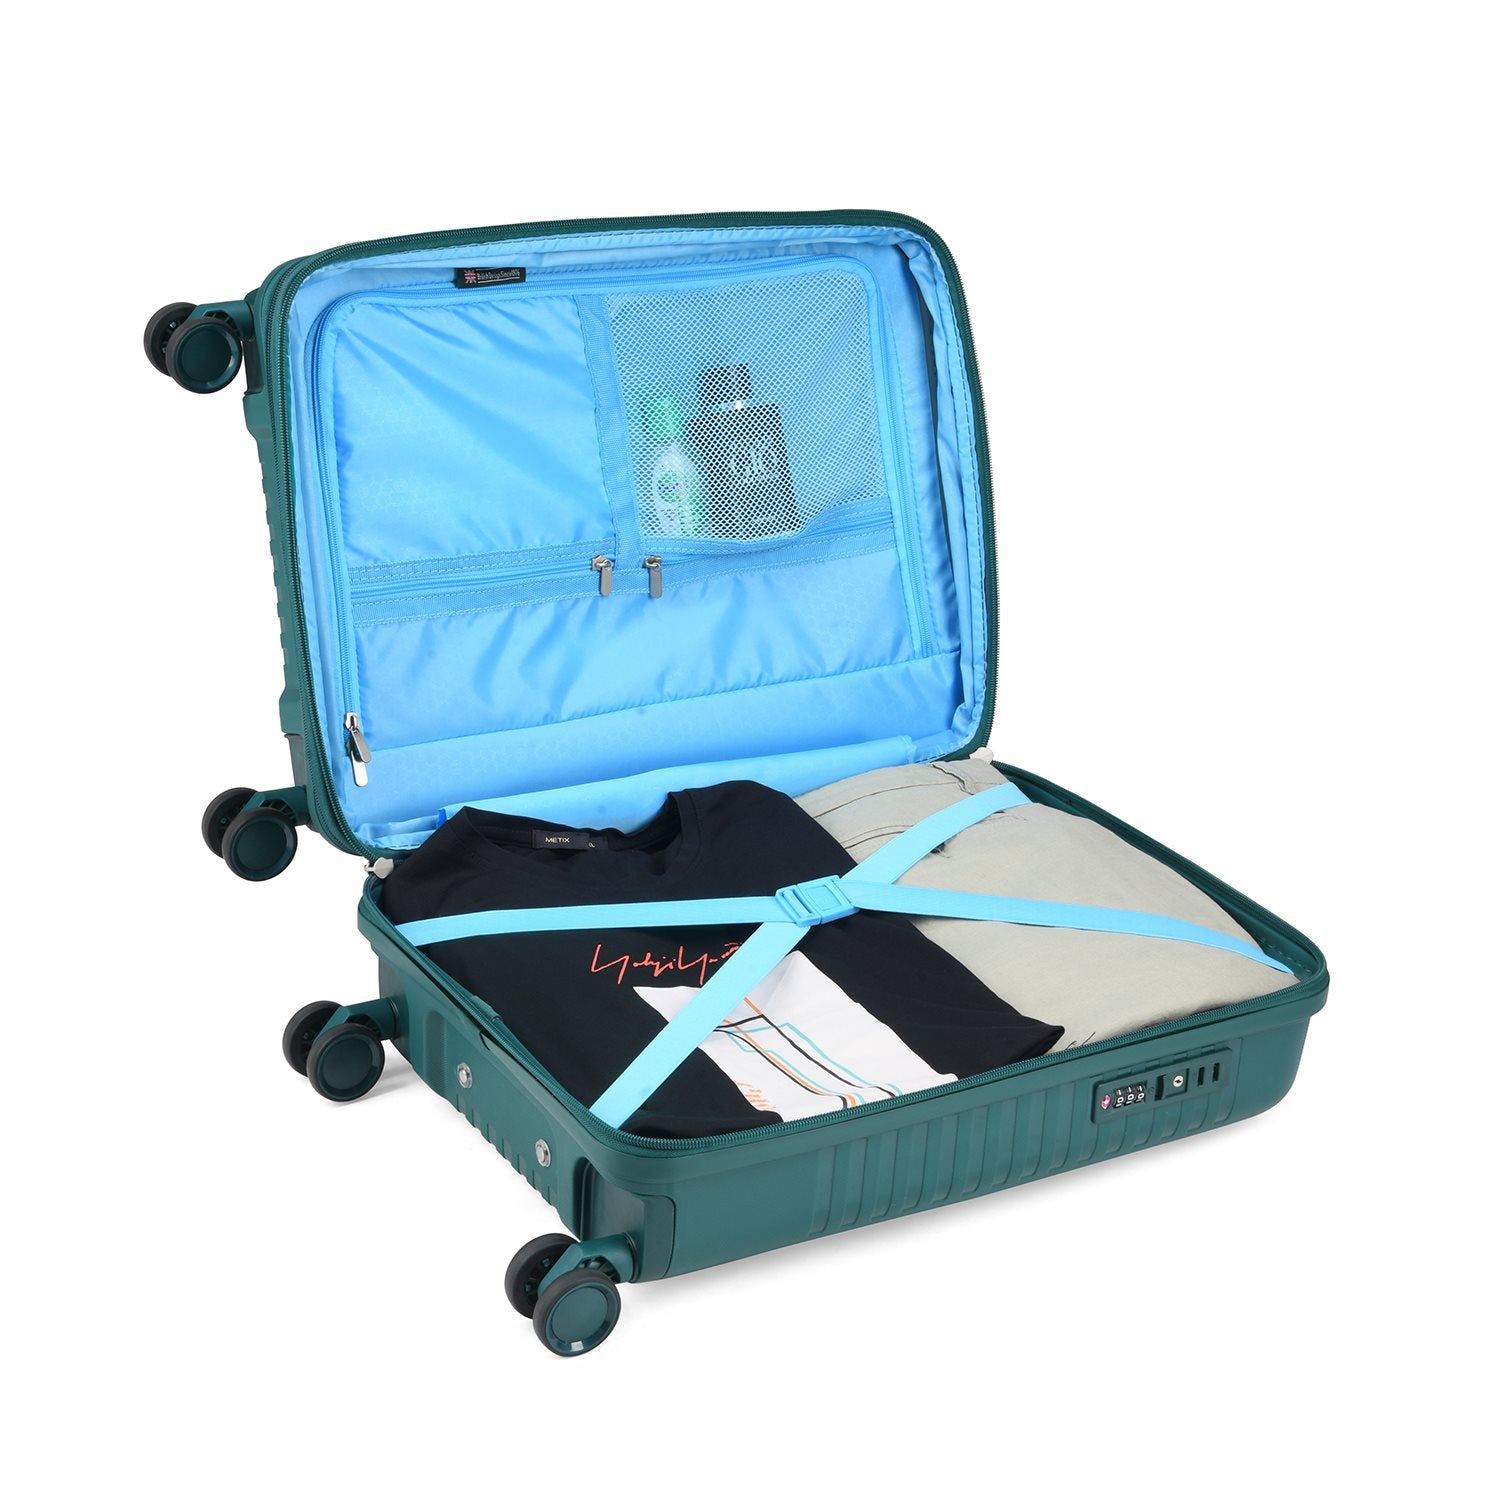 Carlton Wego Plus - Handbagage Koffer - 55 cm - Green Handbagage Koffer - Reisartikelen-nl